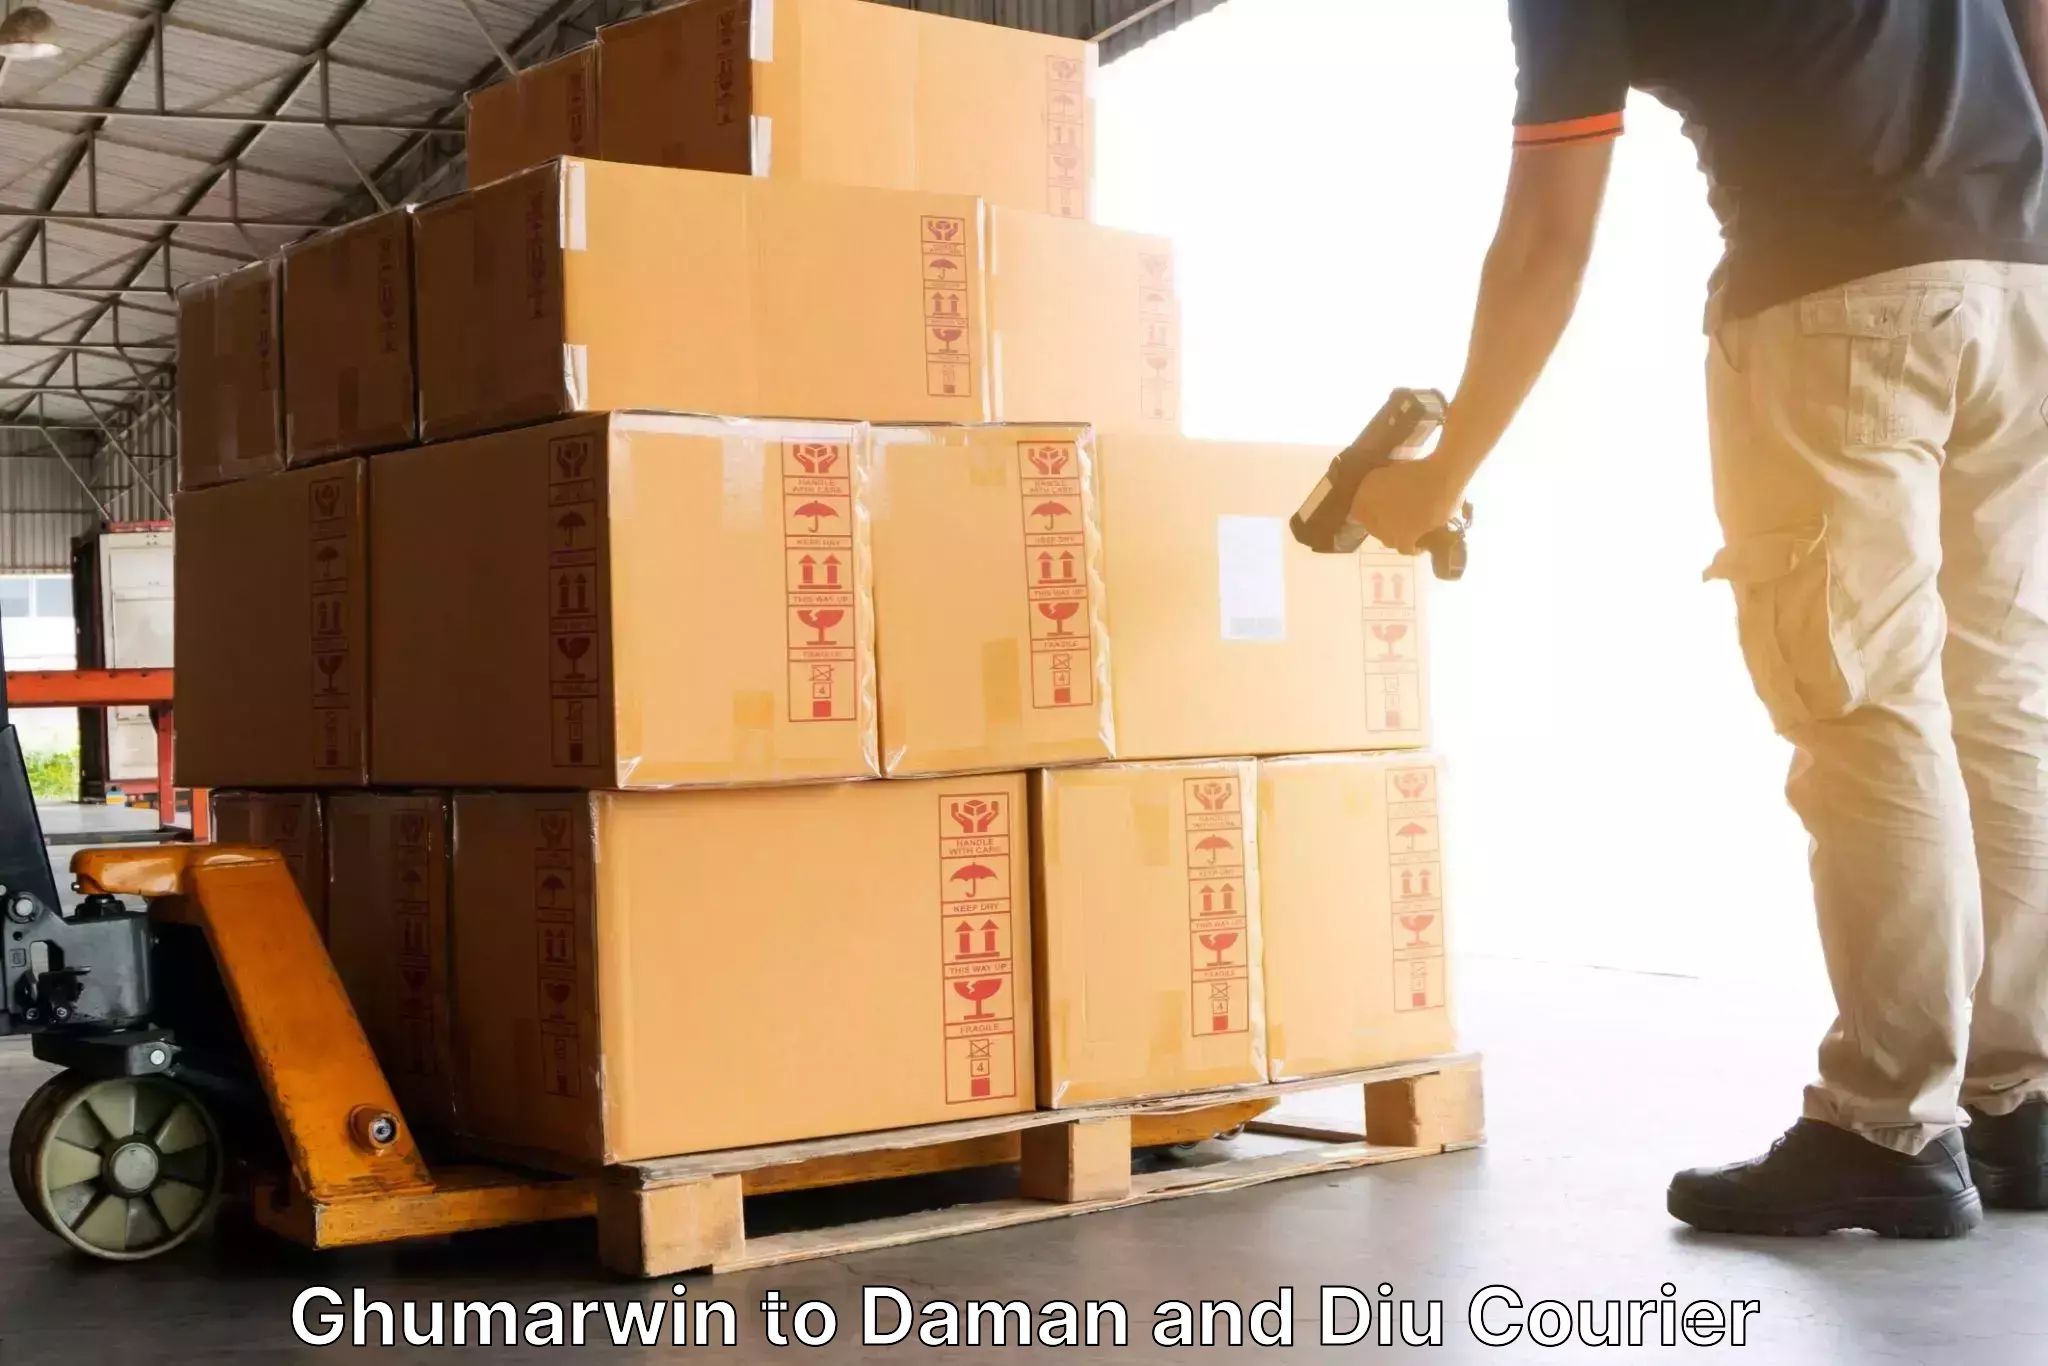 Online shipping calculator Ghumarwin to Diu